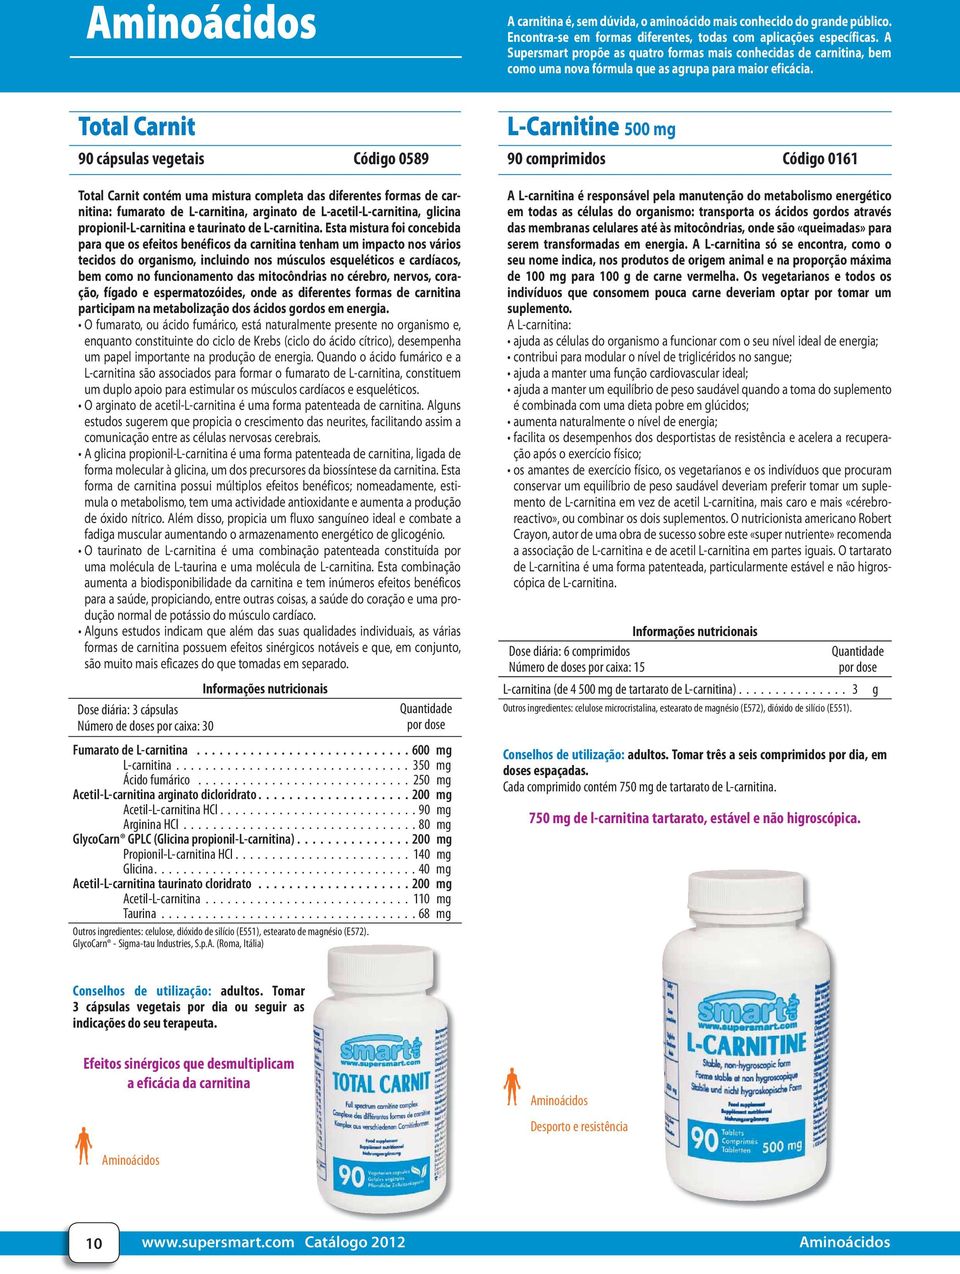 L-Carnitine 500 90 comprimidos Código 0161 Total Carnit contém uma mistura completa das diferentes formas de carnitina: fumarato de L-carnitina, arginato de L-acetil-L-carnitina, glicina